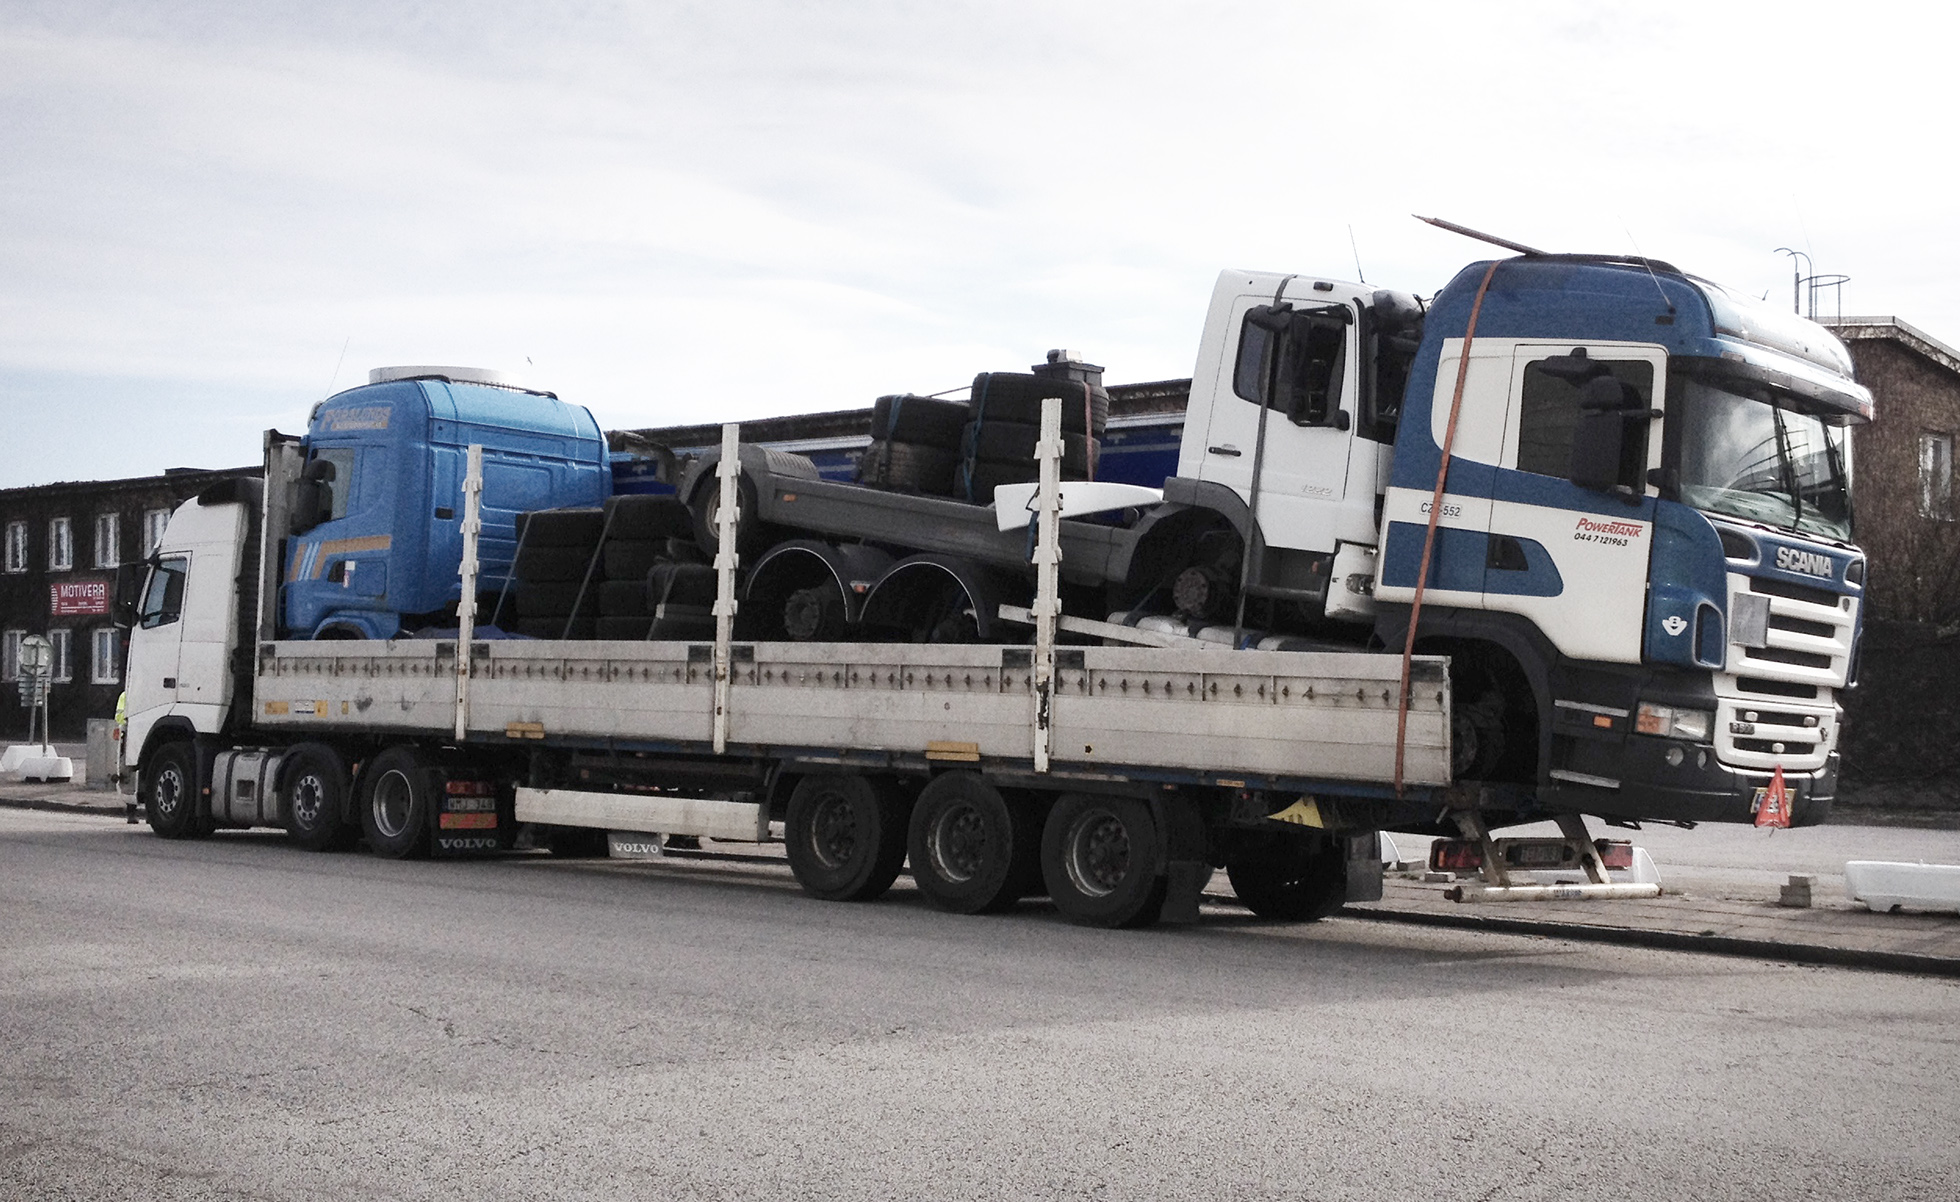 Tre lastbilar med körförbud som är lastade på en lastbil, fästa med enbart spännband. Även lastbilen som de andra fordonen står på har körförbud. Sannolikt ska de transporteras otillåtet utomlands. Foto: Miljöförvaltningen Malmö